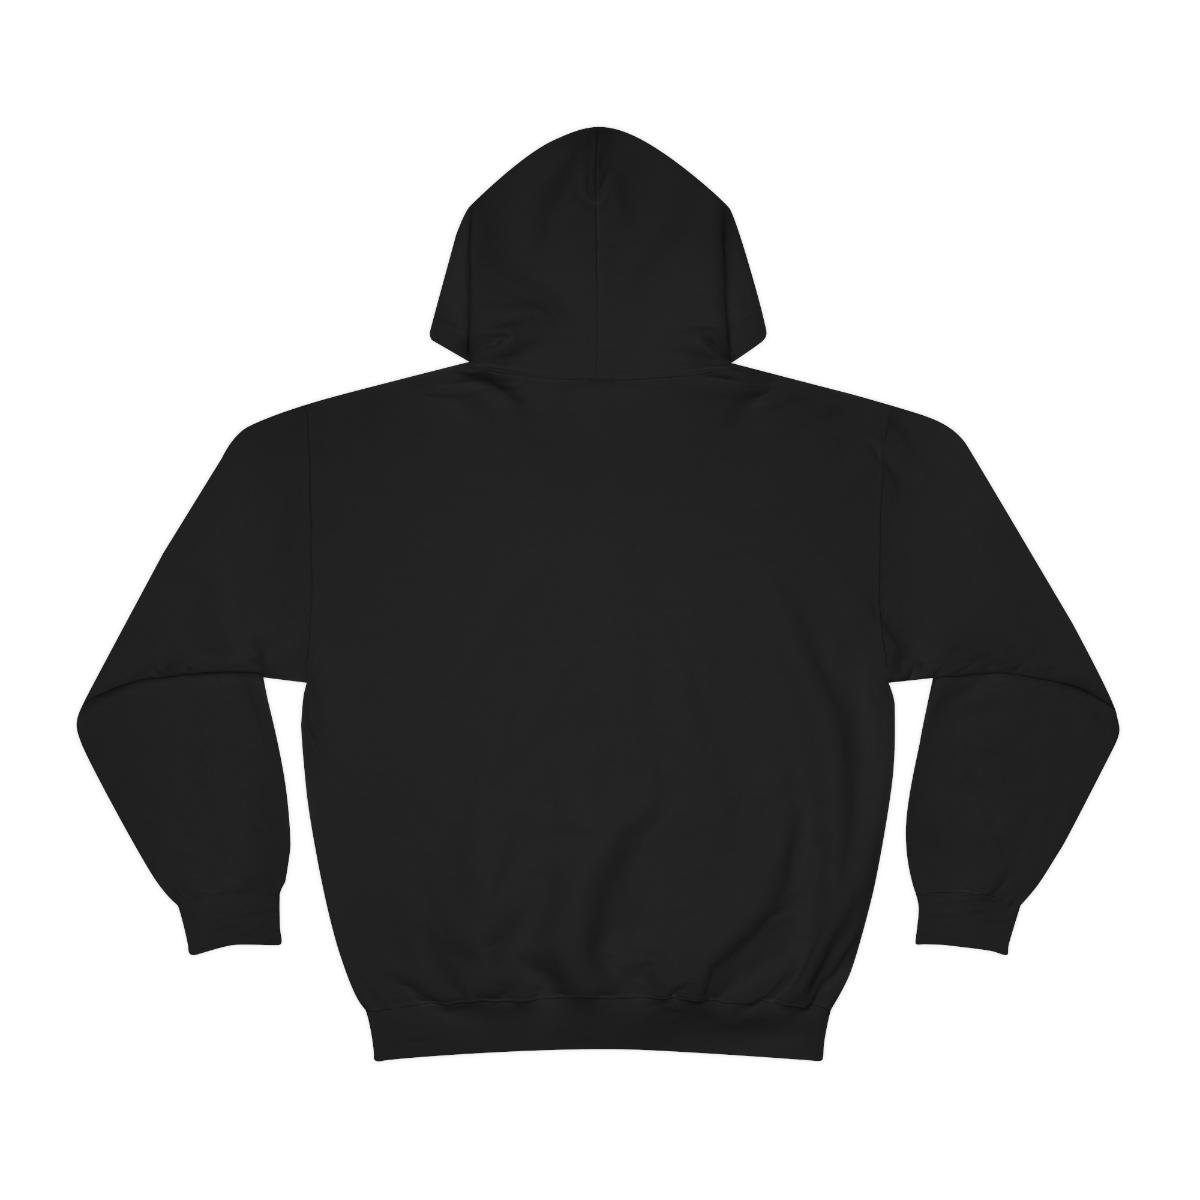 Crumbacher – Incandescent Pullover Hooded Sweatshirt